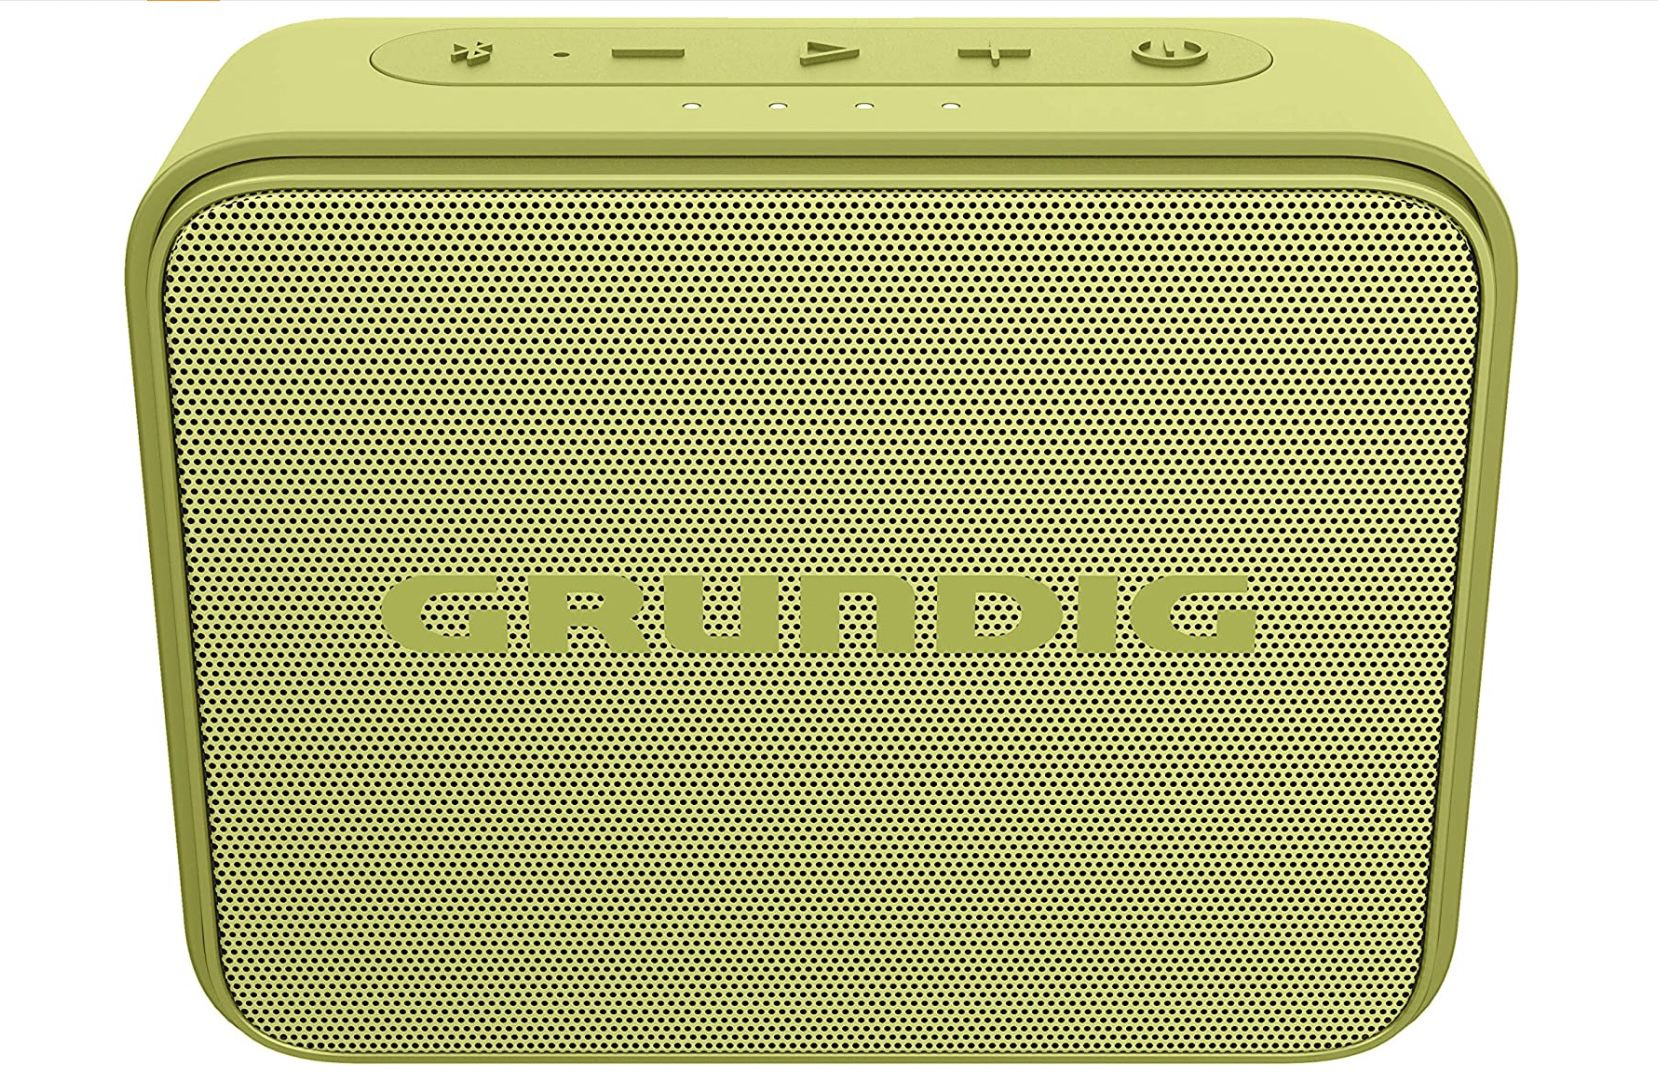 Grundig GBT Jam Lime   Bluetooth Lautsprecher für 19,99€ (statt 25€)   Prime